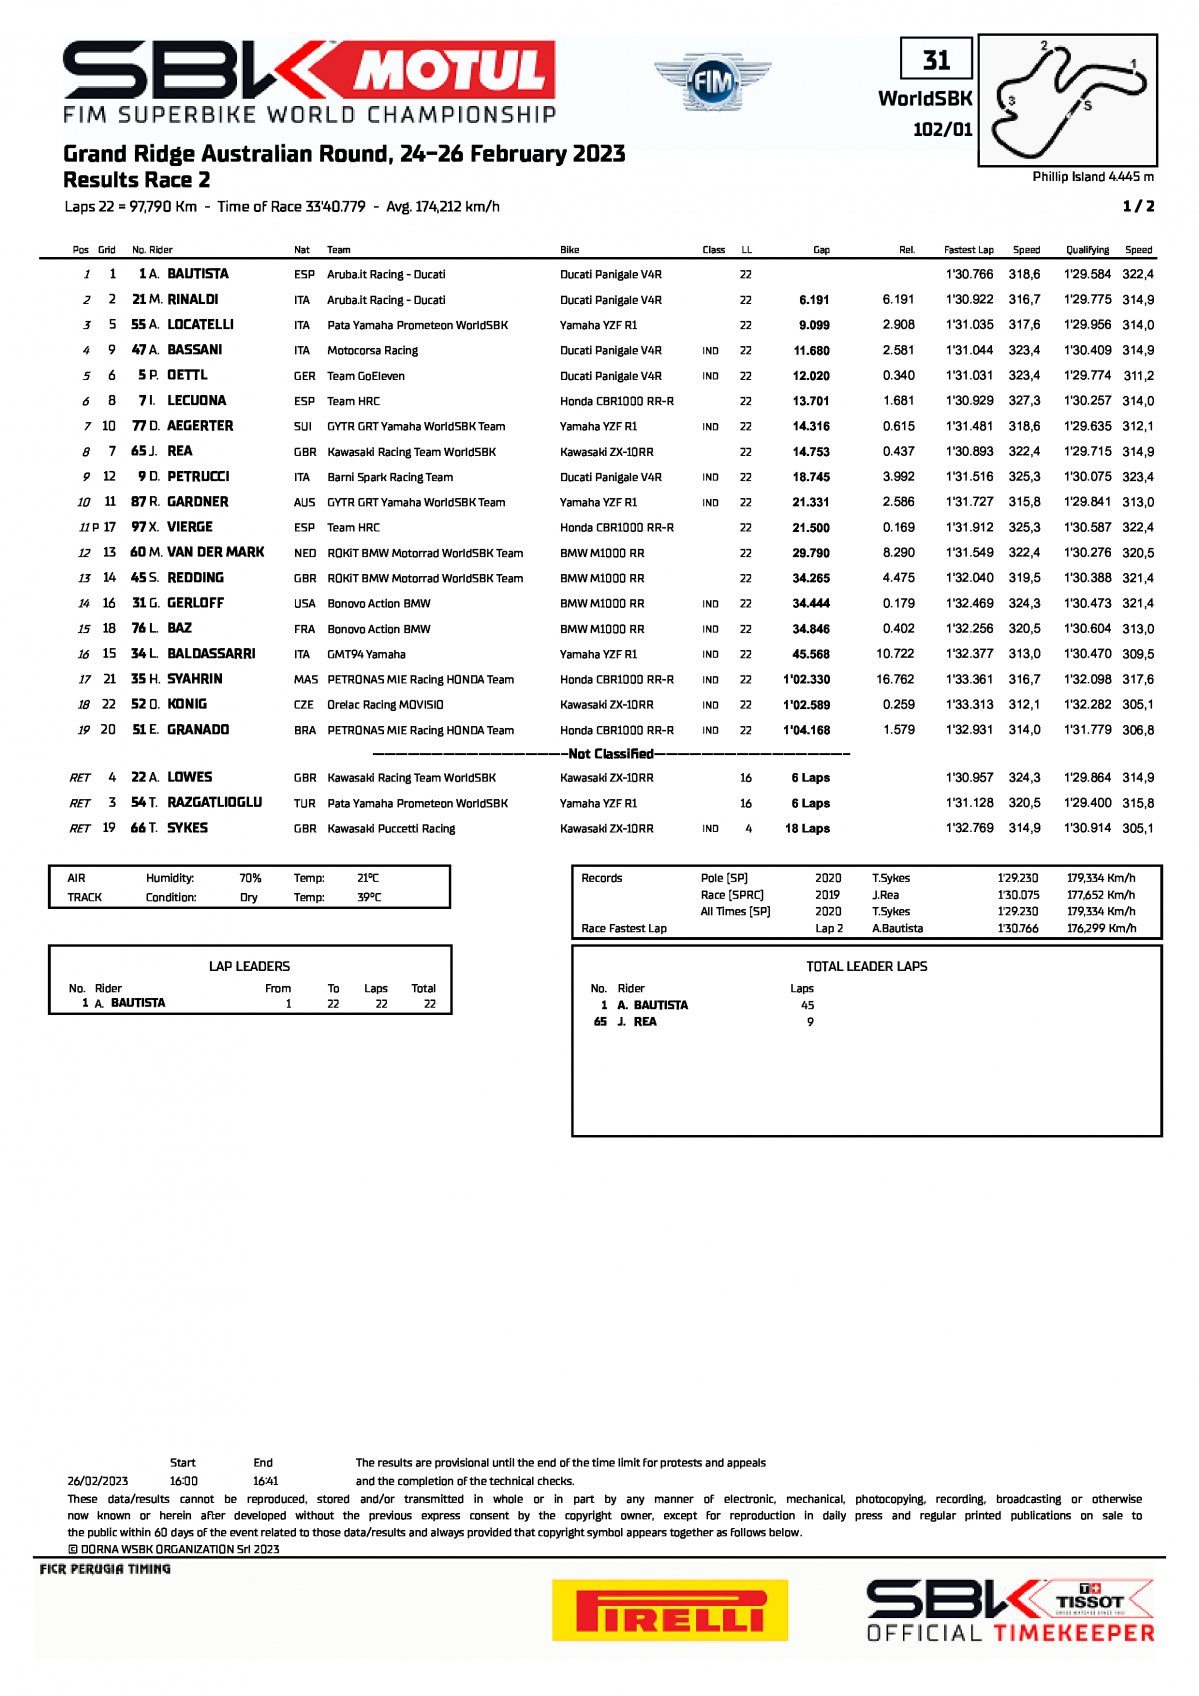 Результаты 2 гонки AUSWorldSBK, Phillip Island (26/02/2023)